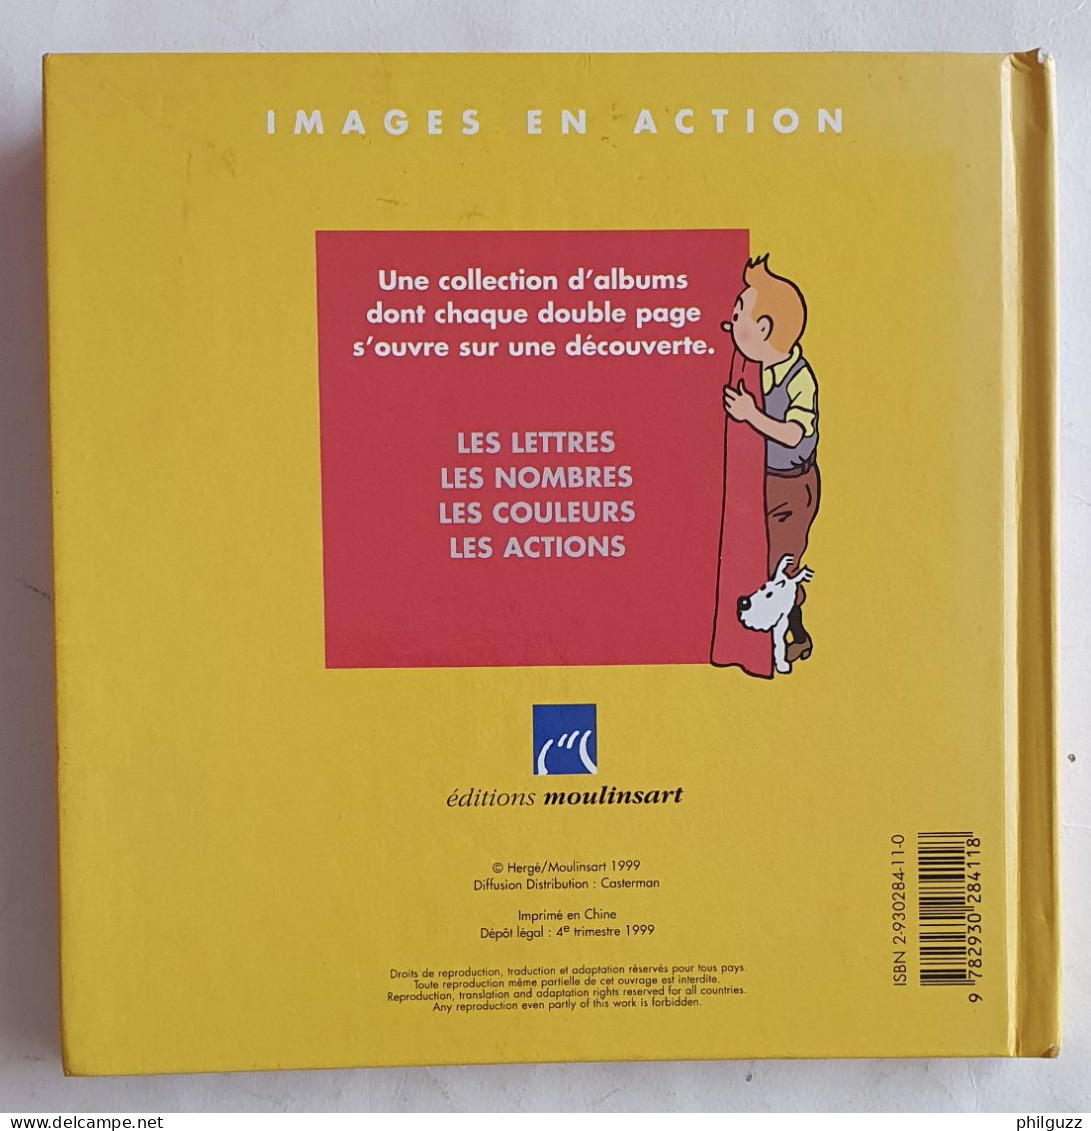 Images En Action LIVRE ALBUM TINTIN MOULINSART 1999 JE DECOUVRE LES COULEURS - Hergé